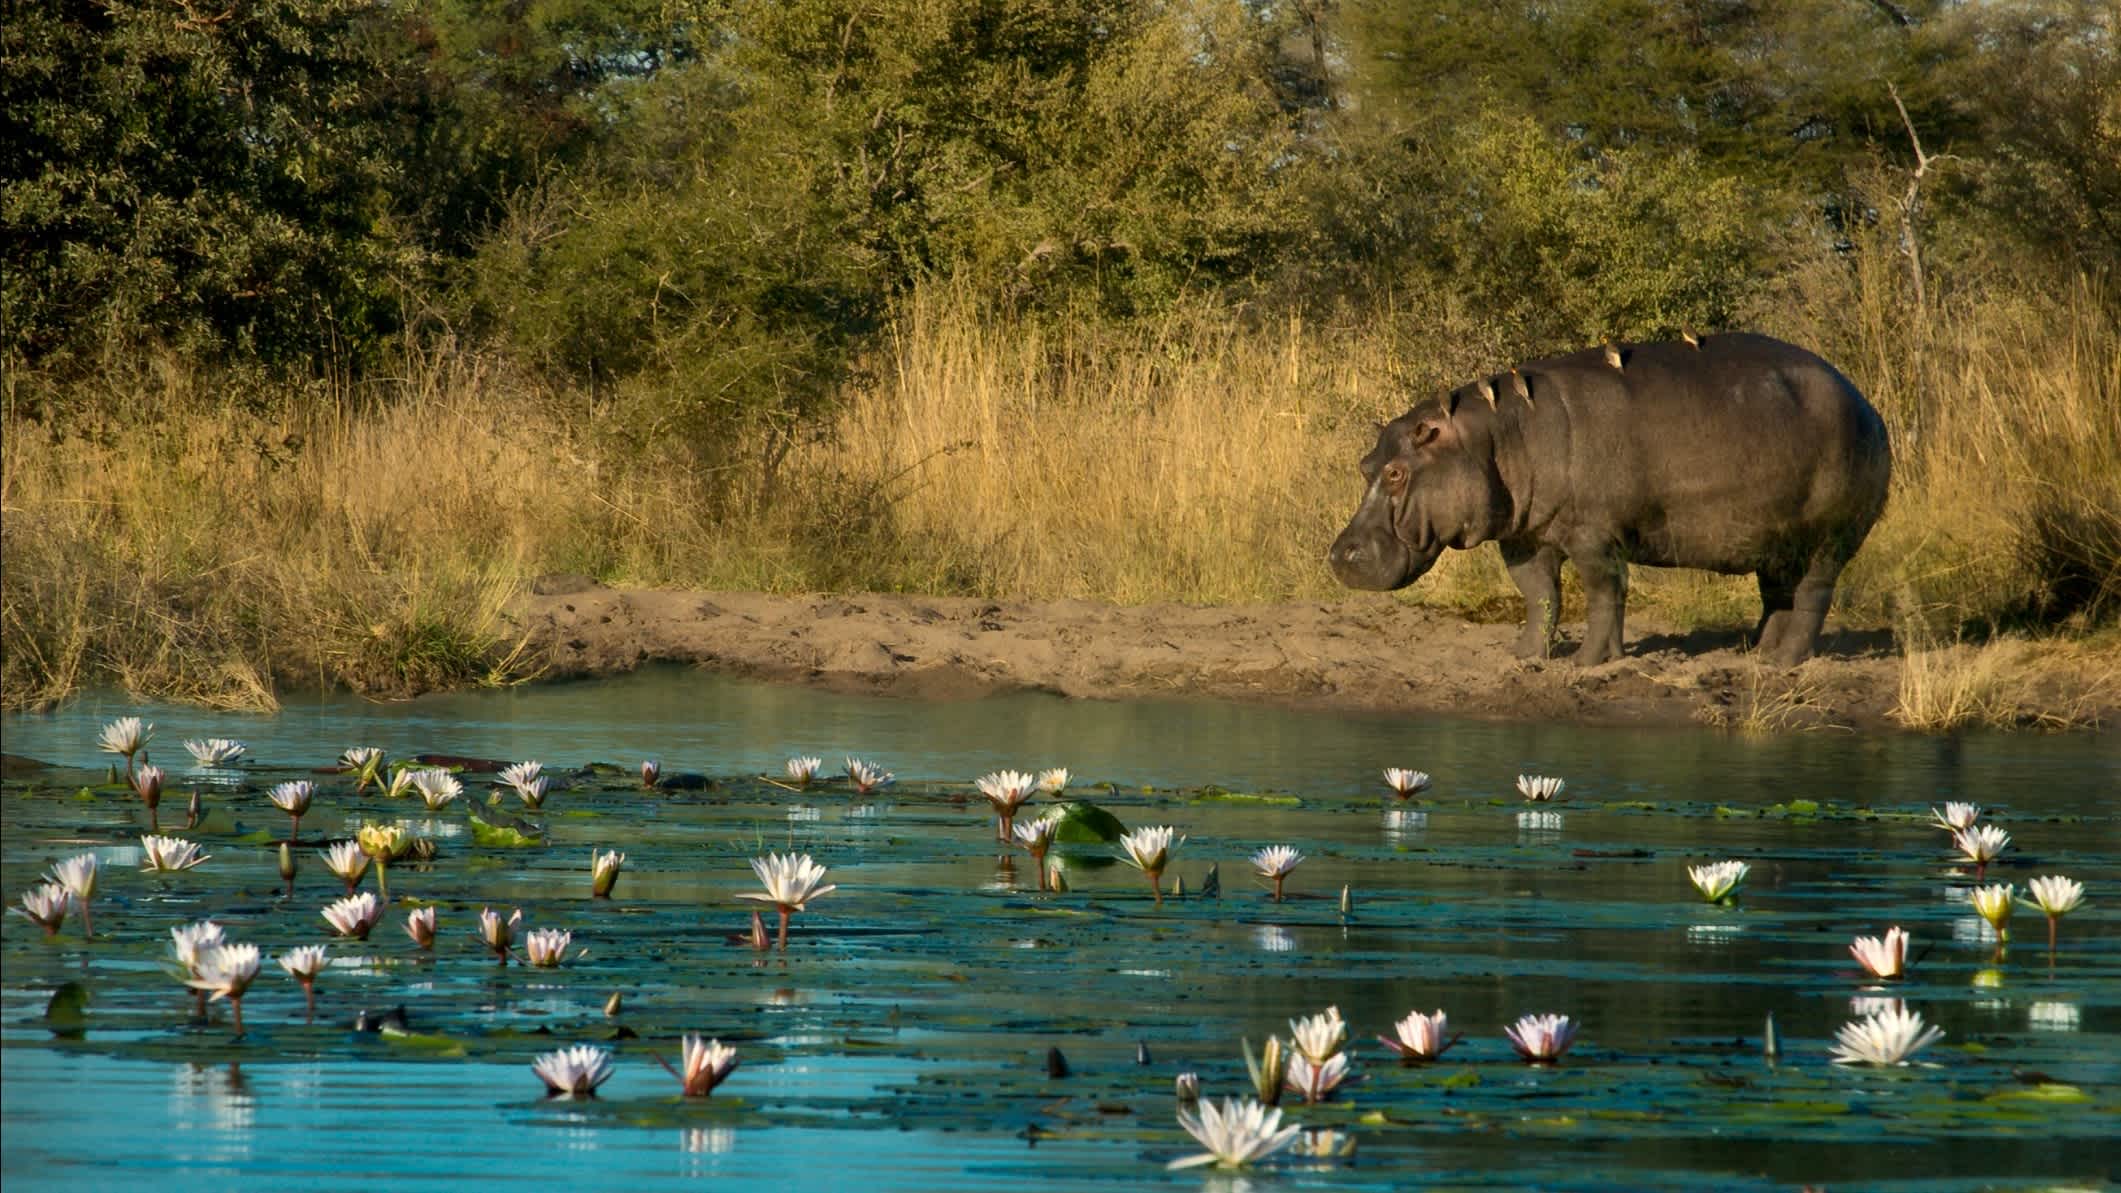 Hippopotamus am Flussufer der Kwando-Fluss, Caprivi Strip, Namibia.

